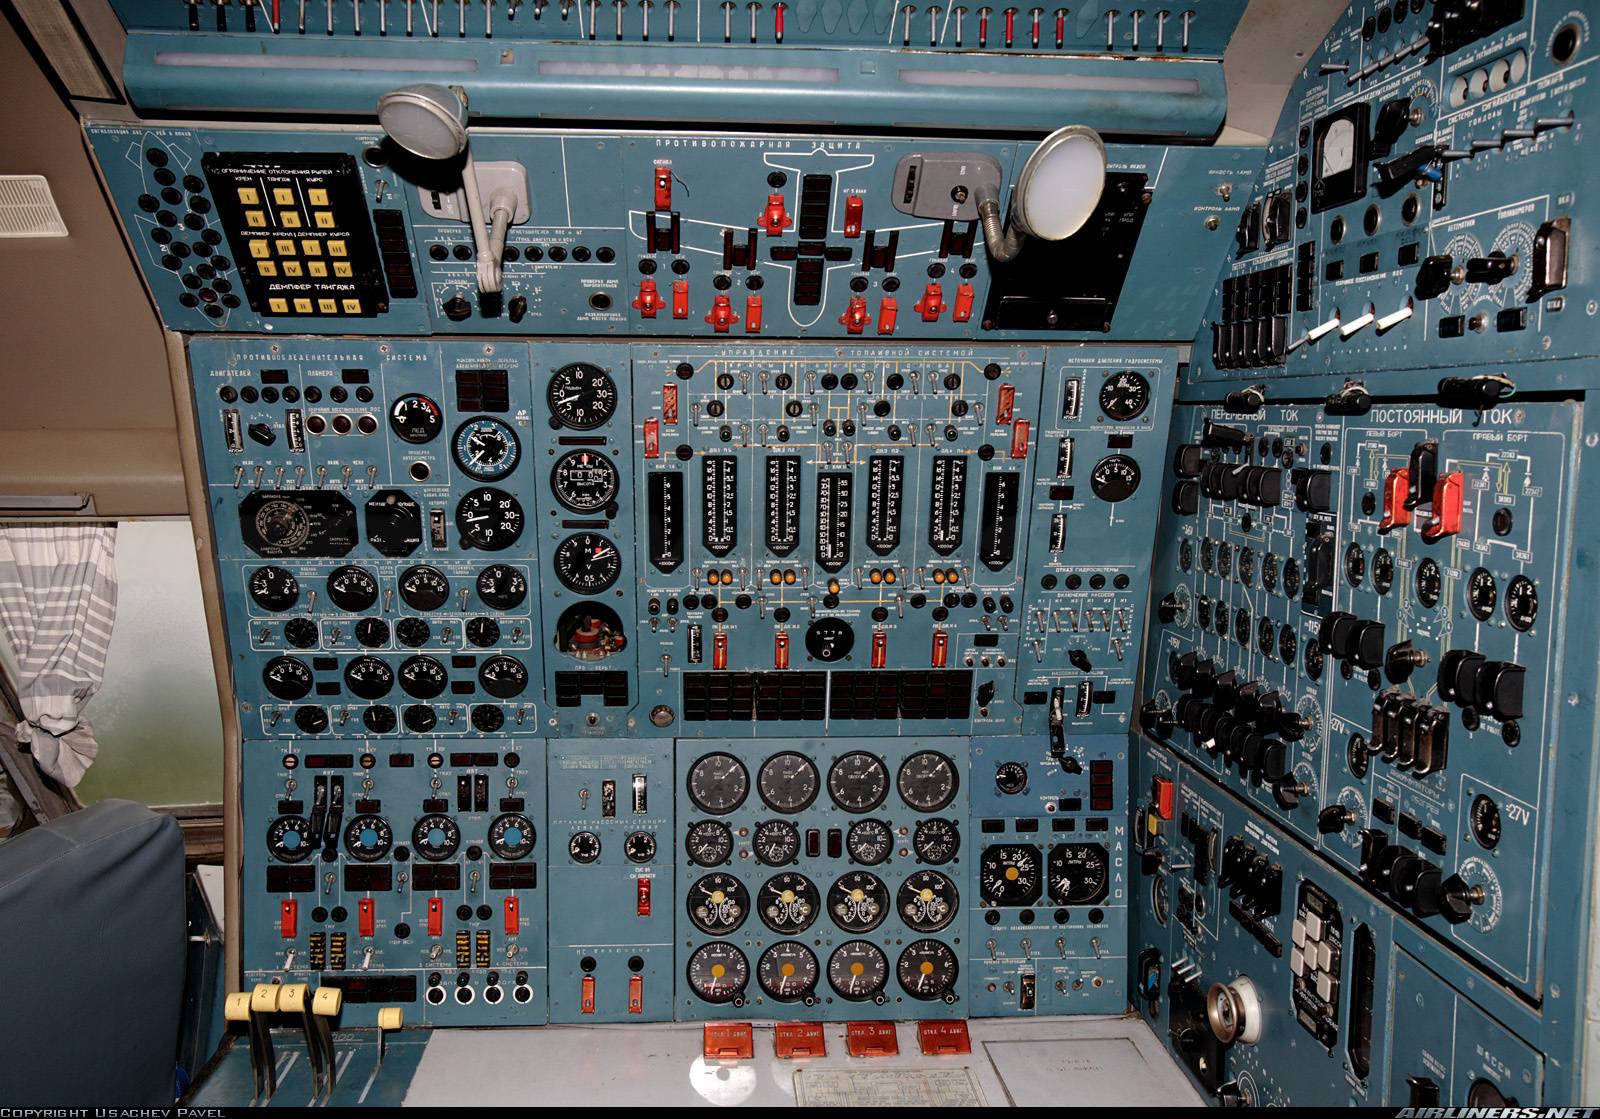 Самолет ил 86: технические характеристики, история создания, приборное оборудование